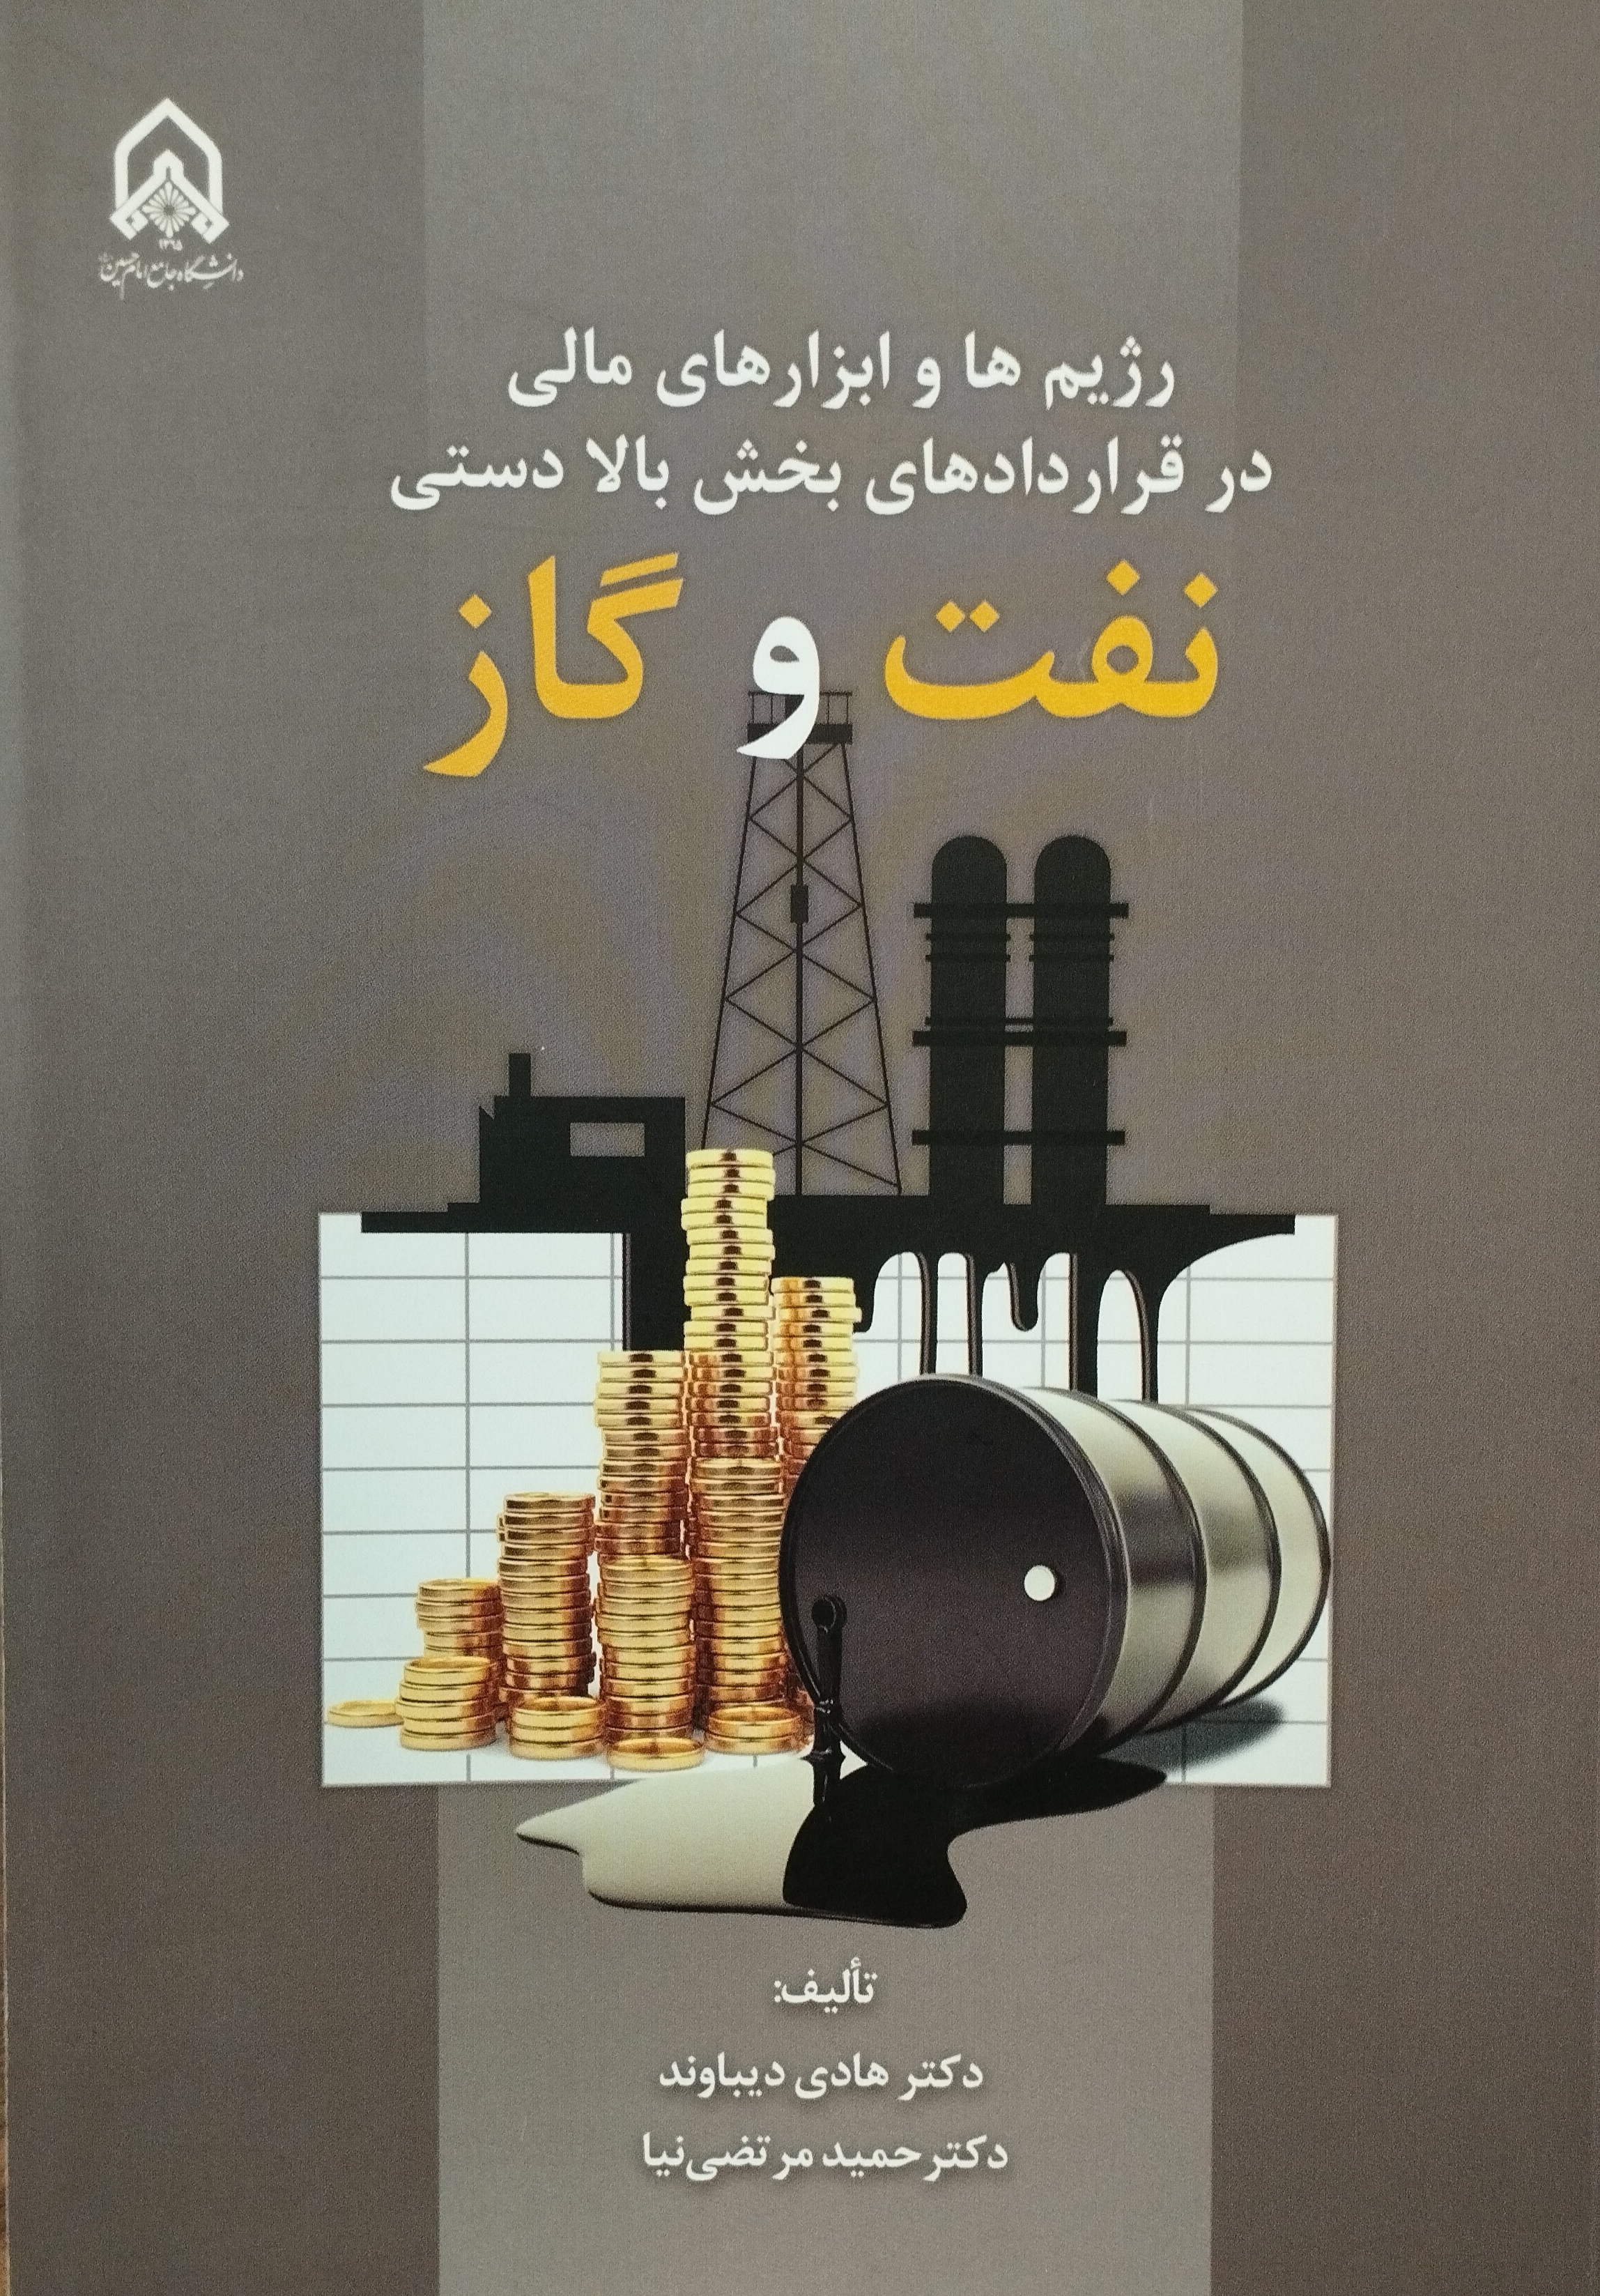 عنوان کتاب:  کتاب رژیم ها و ابزارهای مالی در قراردادهای بخش بالا دستی نفت و گاز